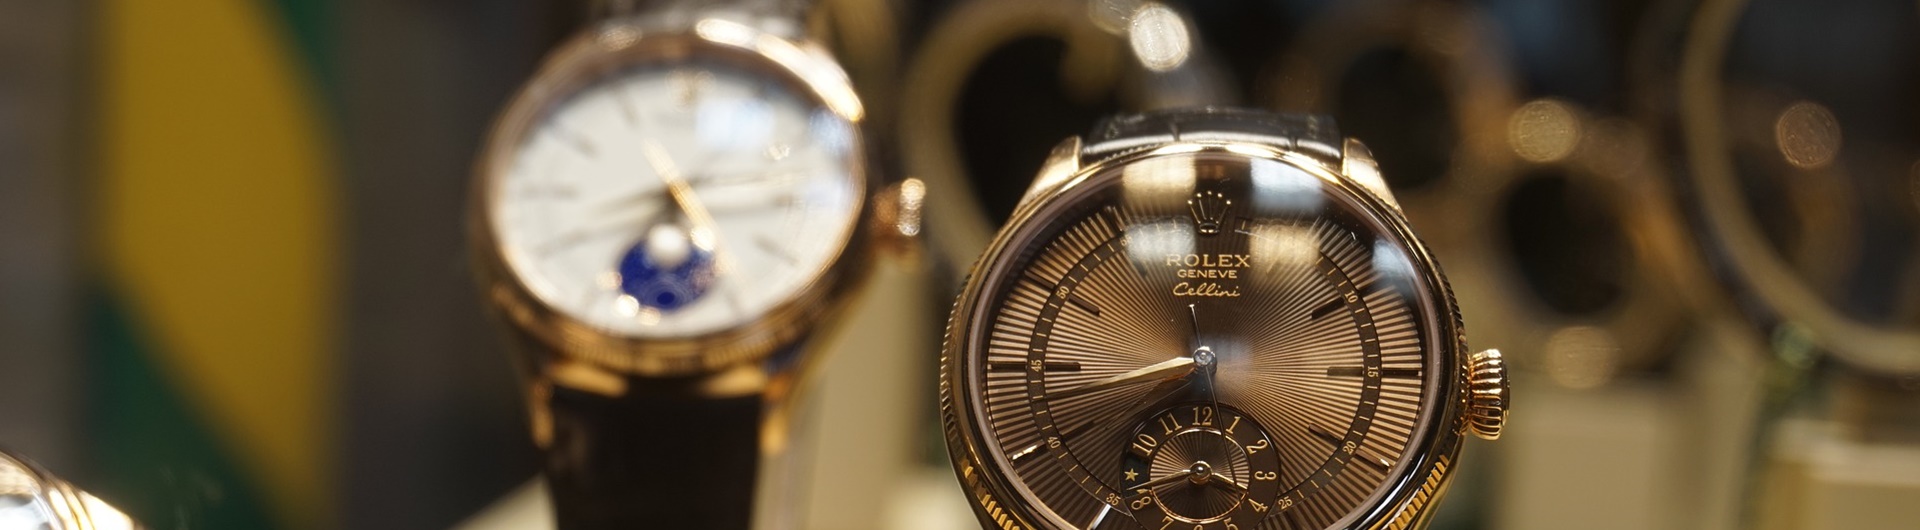 Rolex i jego rodzina – jak działają strategie marek luksusowych